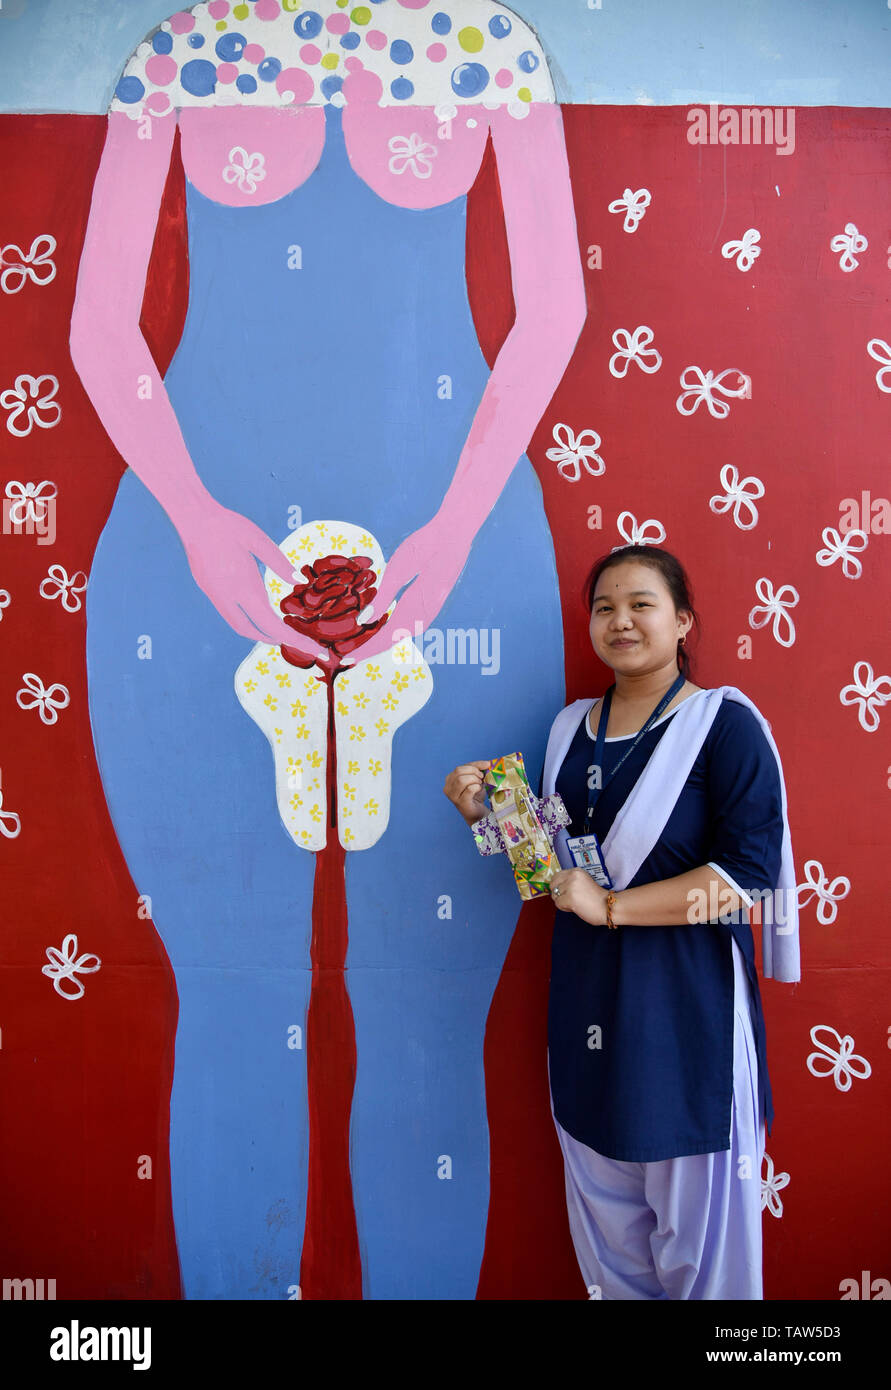 Guwahati, Inde. 28 mai, 2019. Un étudiant de Parijat Academy tenant un tampon menstruel en tissu réutilisables qui faites par les élèves de l'Académie l'hygiène menstruelle Parijat comme jour d'observation est aujourd'hui, à Guwahati, Assam, le 28 mai 2019. Parijat Academy est une école pour les enfants défavorisés. Il s'agit d'un non religieux et non l'école rentable offrant une formation gratuite. Crédit : David Talukdar/Alamy Live News Banque D'Images